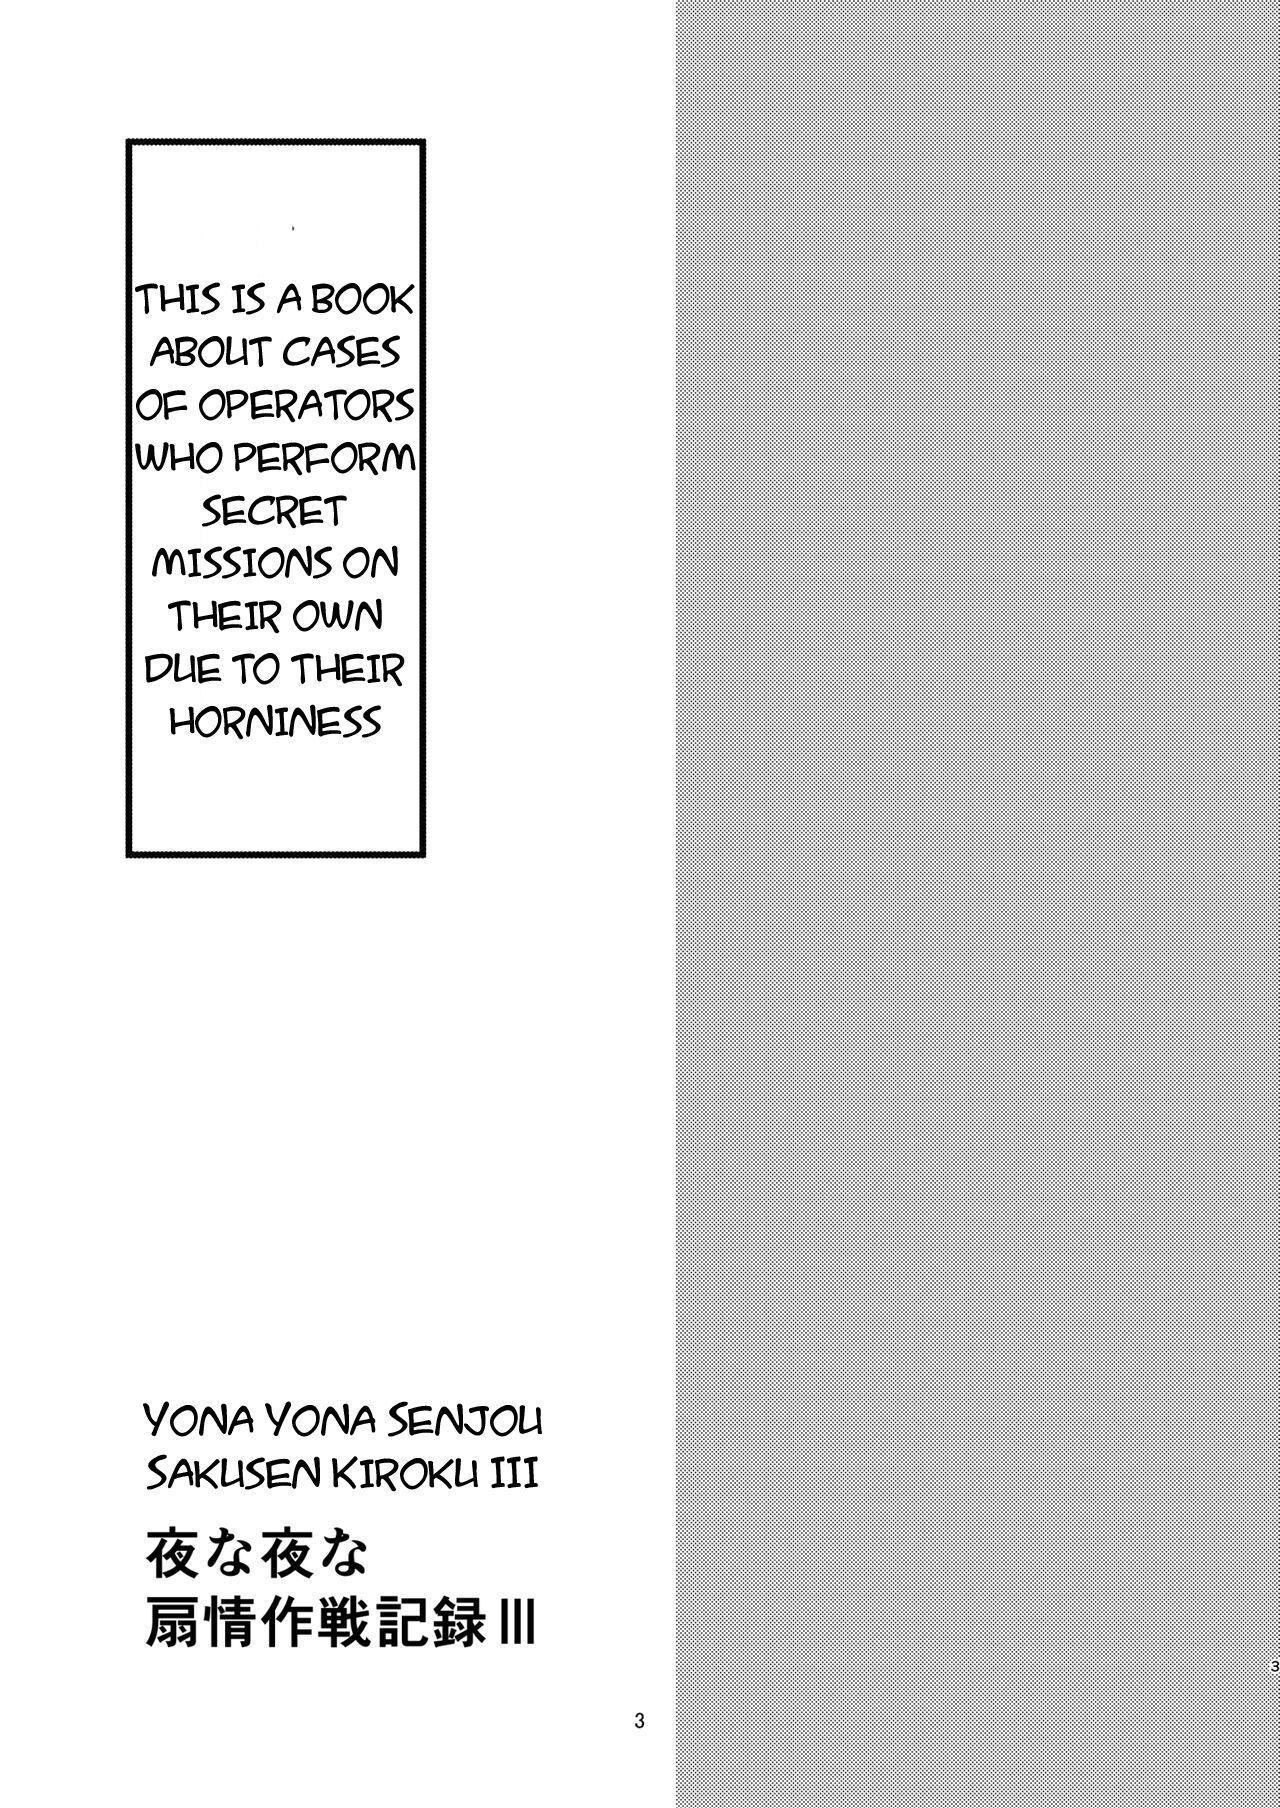 Freeporn Yona Yona Senjou Sakusen Kiroku III - Arknights Play - Page 3